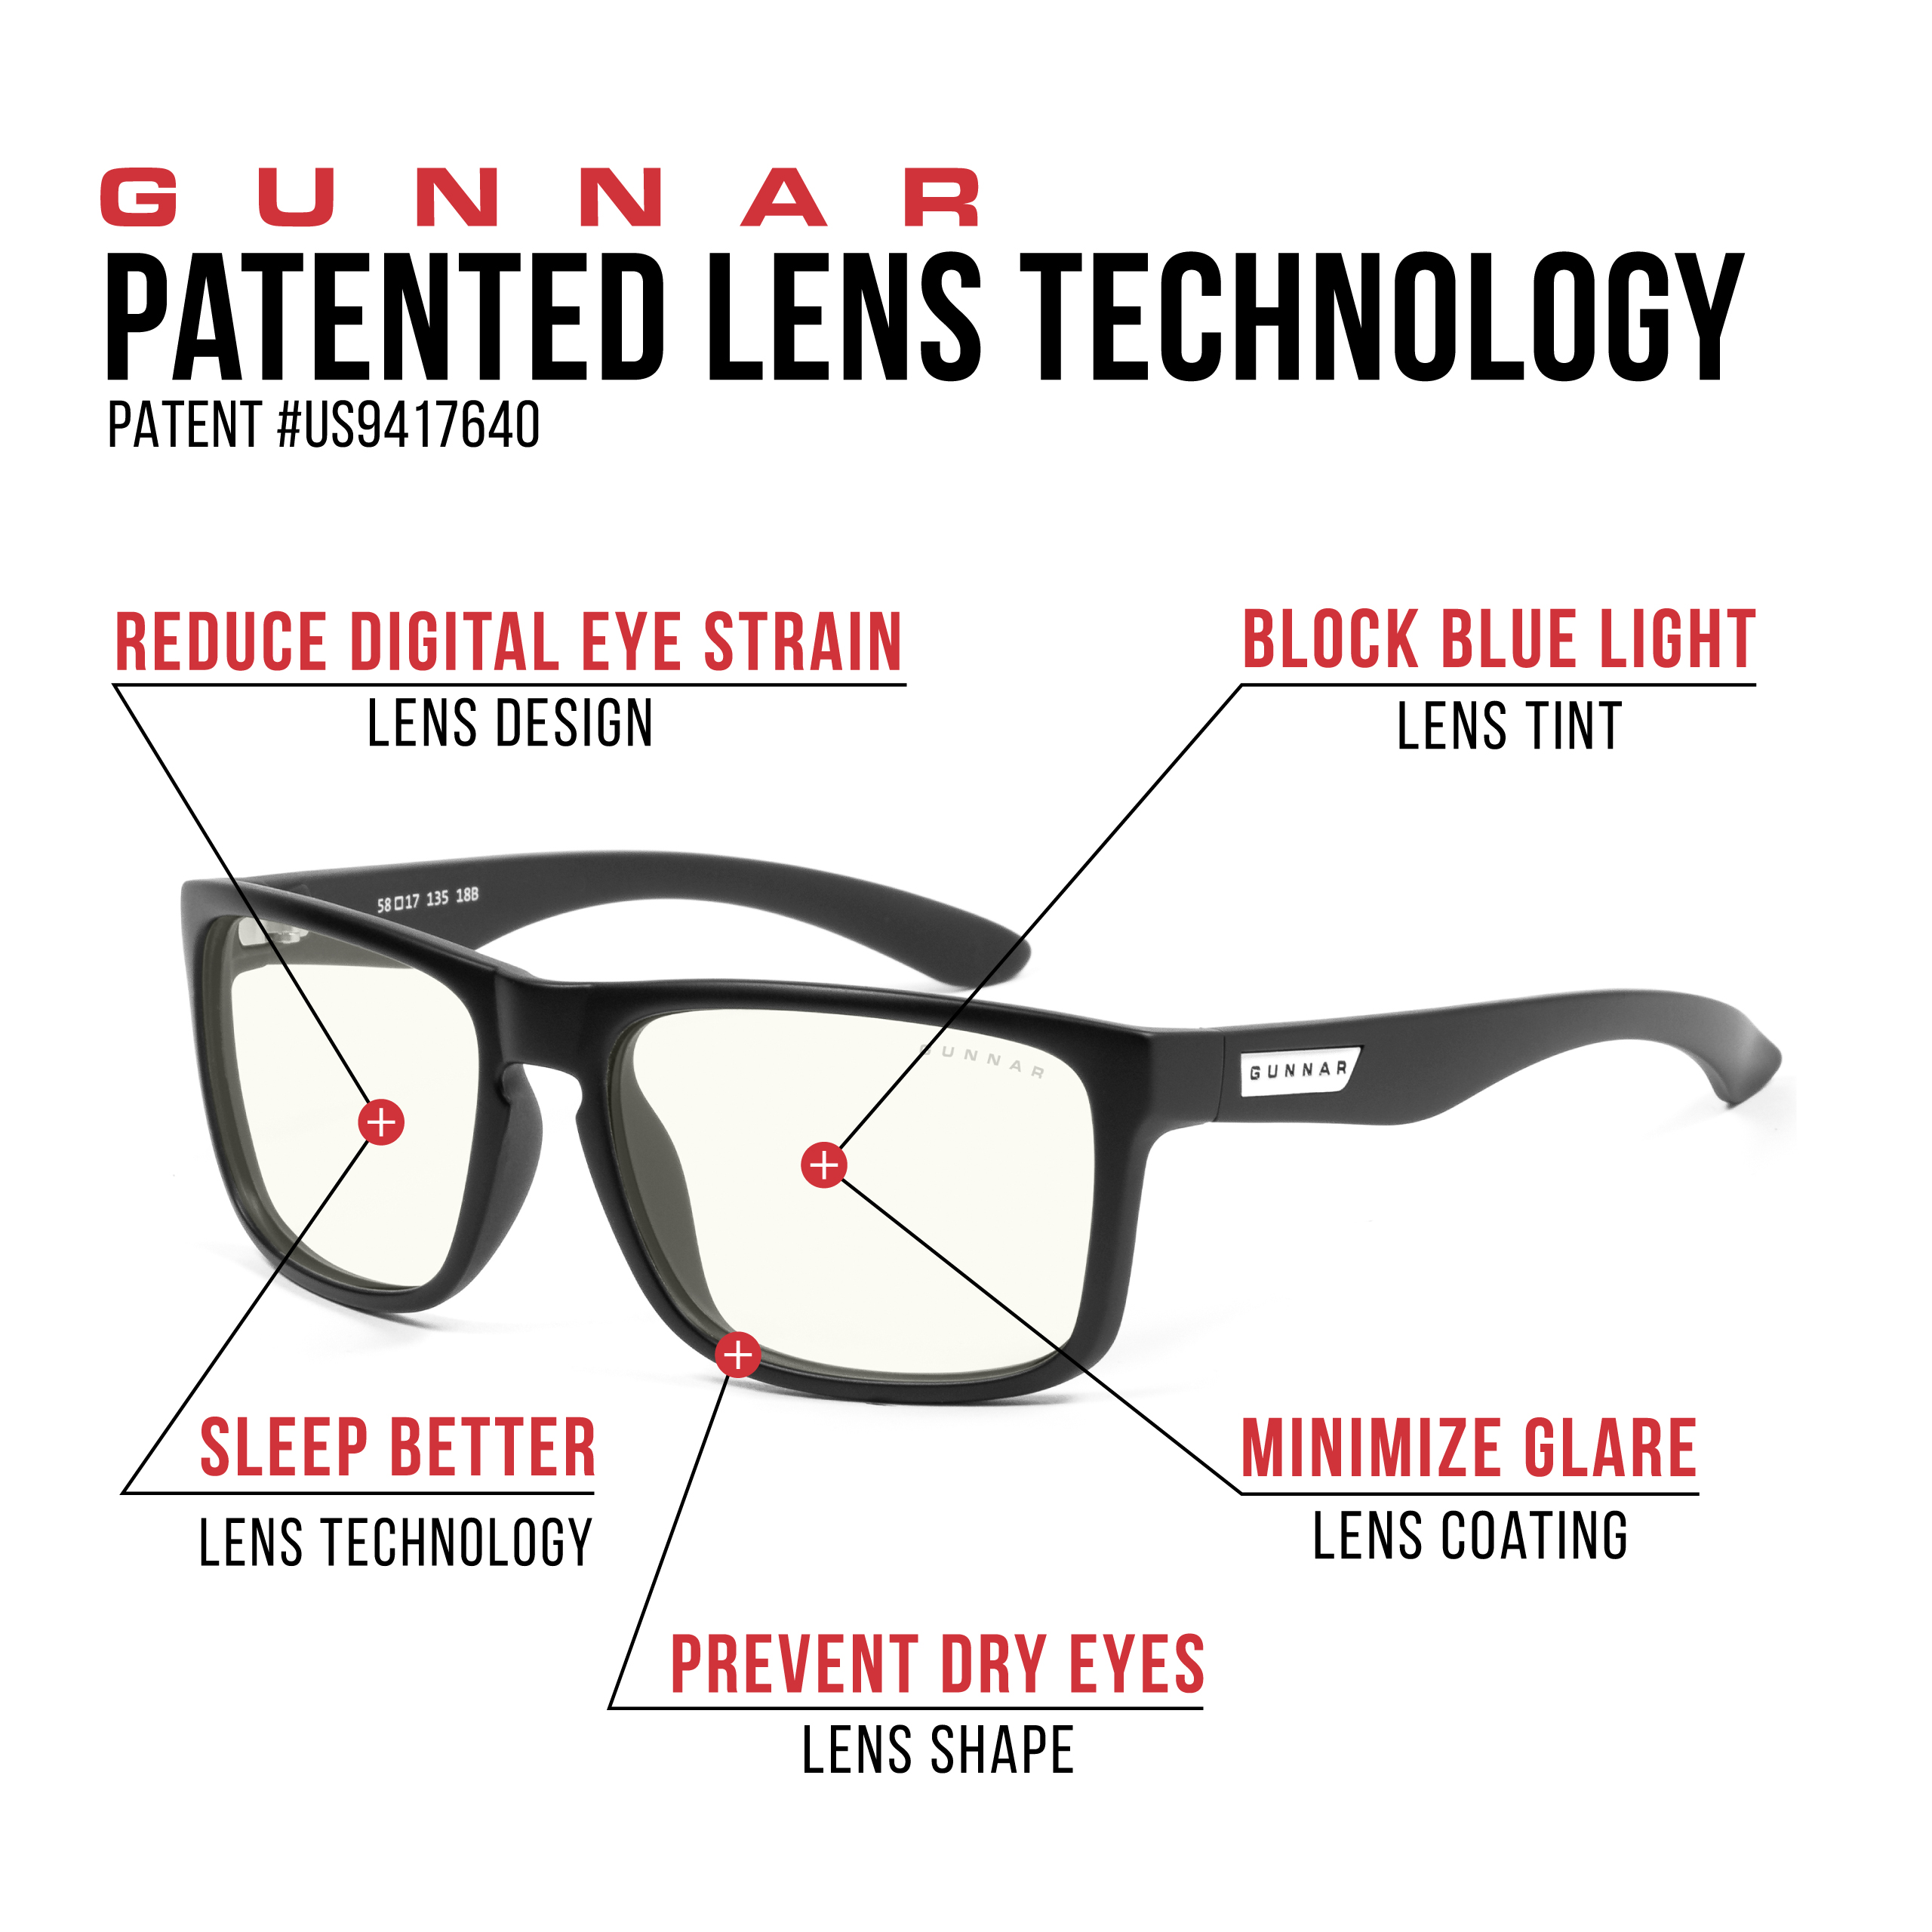 GUNNAR Intercept, Onyx Rahmen, Gaming Brille Blaulichtfilter, UV-Schutz, Premium, Tönung, Clear